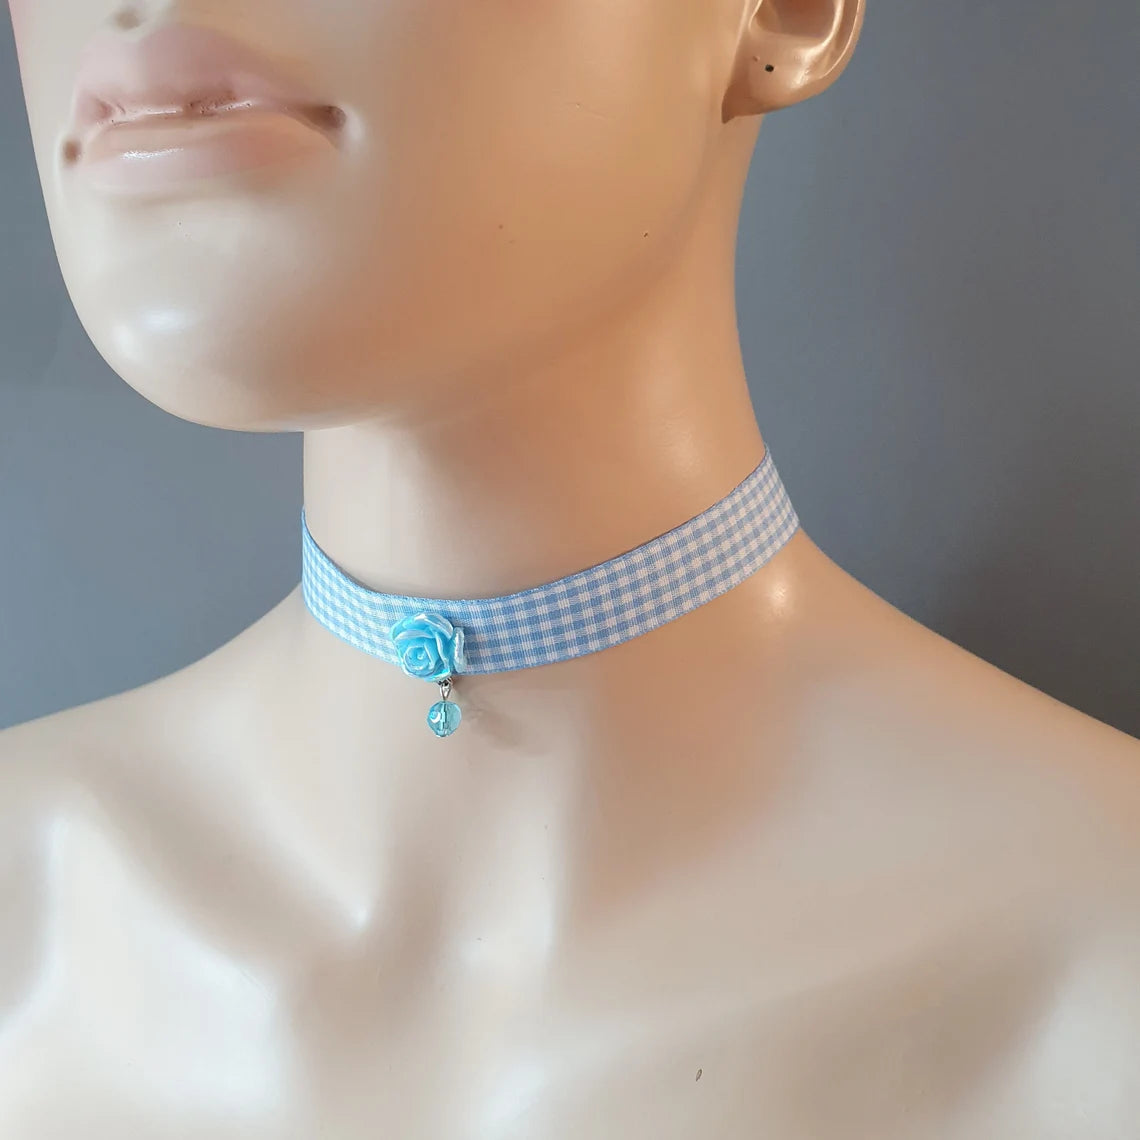 Halsband, Kropfband, Vichy Karoband Blau, mit Röschen